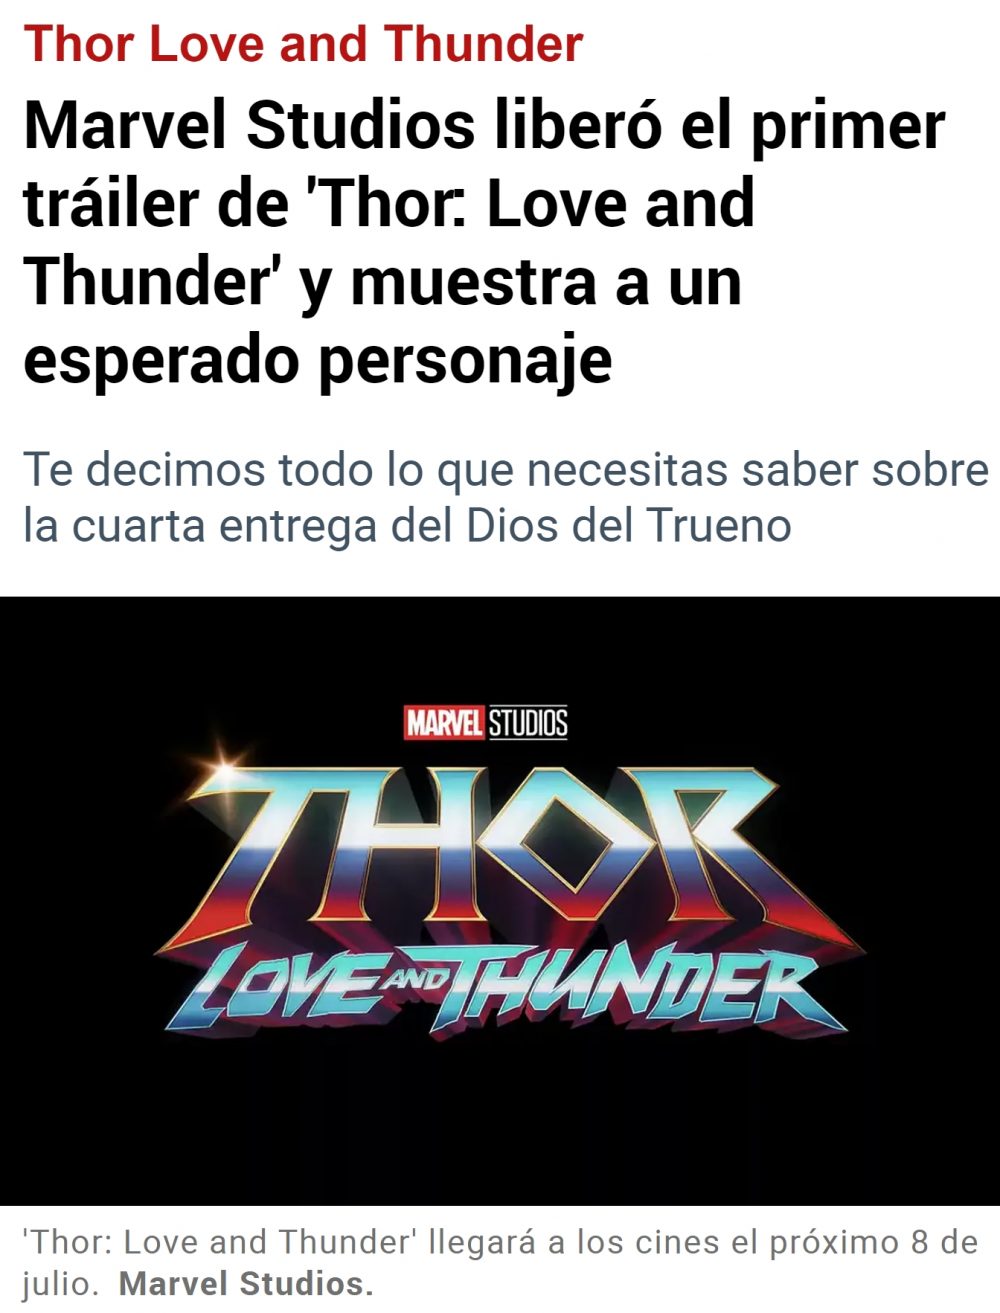 ¿Thor? Sí, también mujer